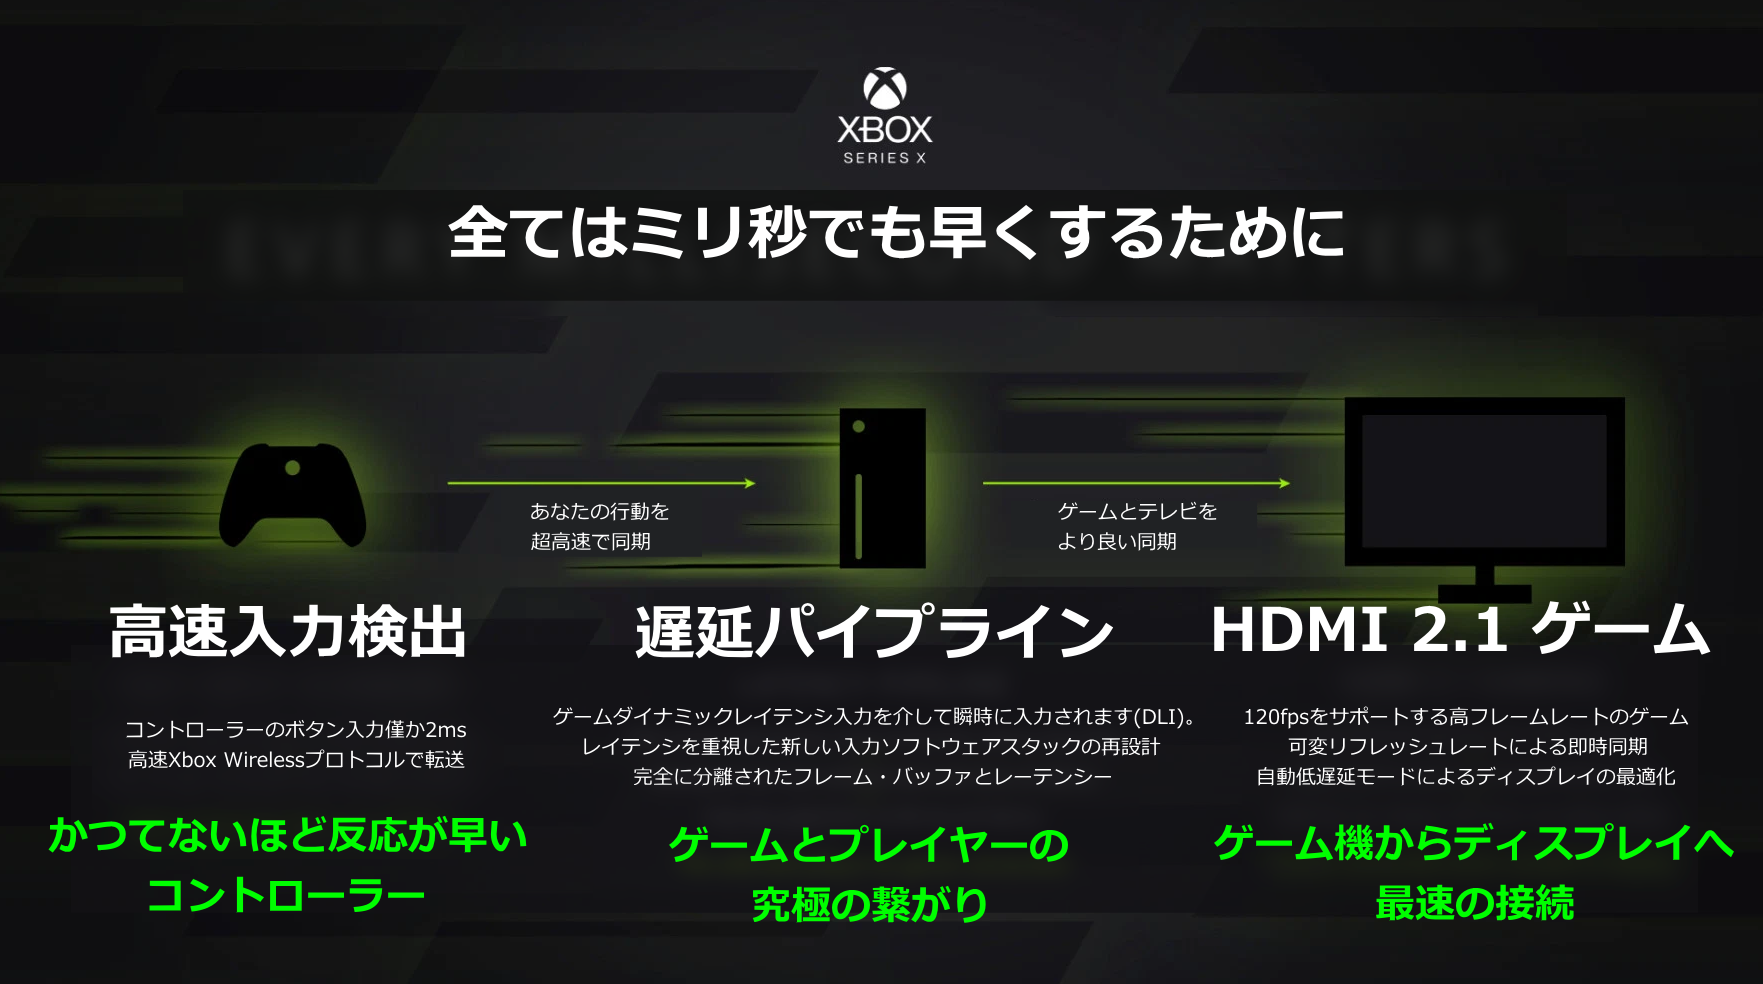 Xbox Series Xでは遅延を1msでも高速にするために様々な仕組みが用意されている Wpteq